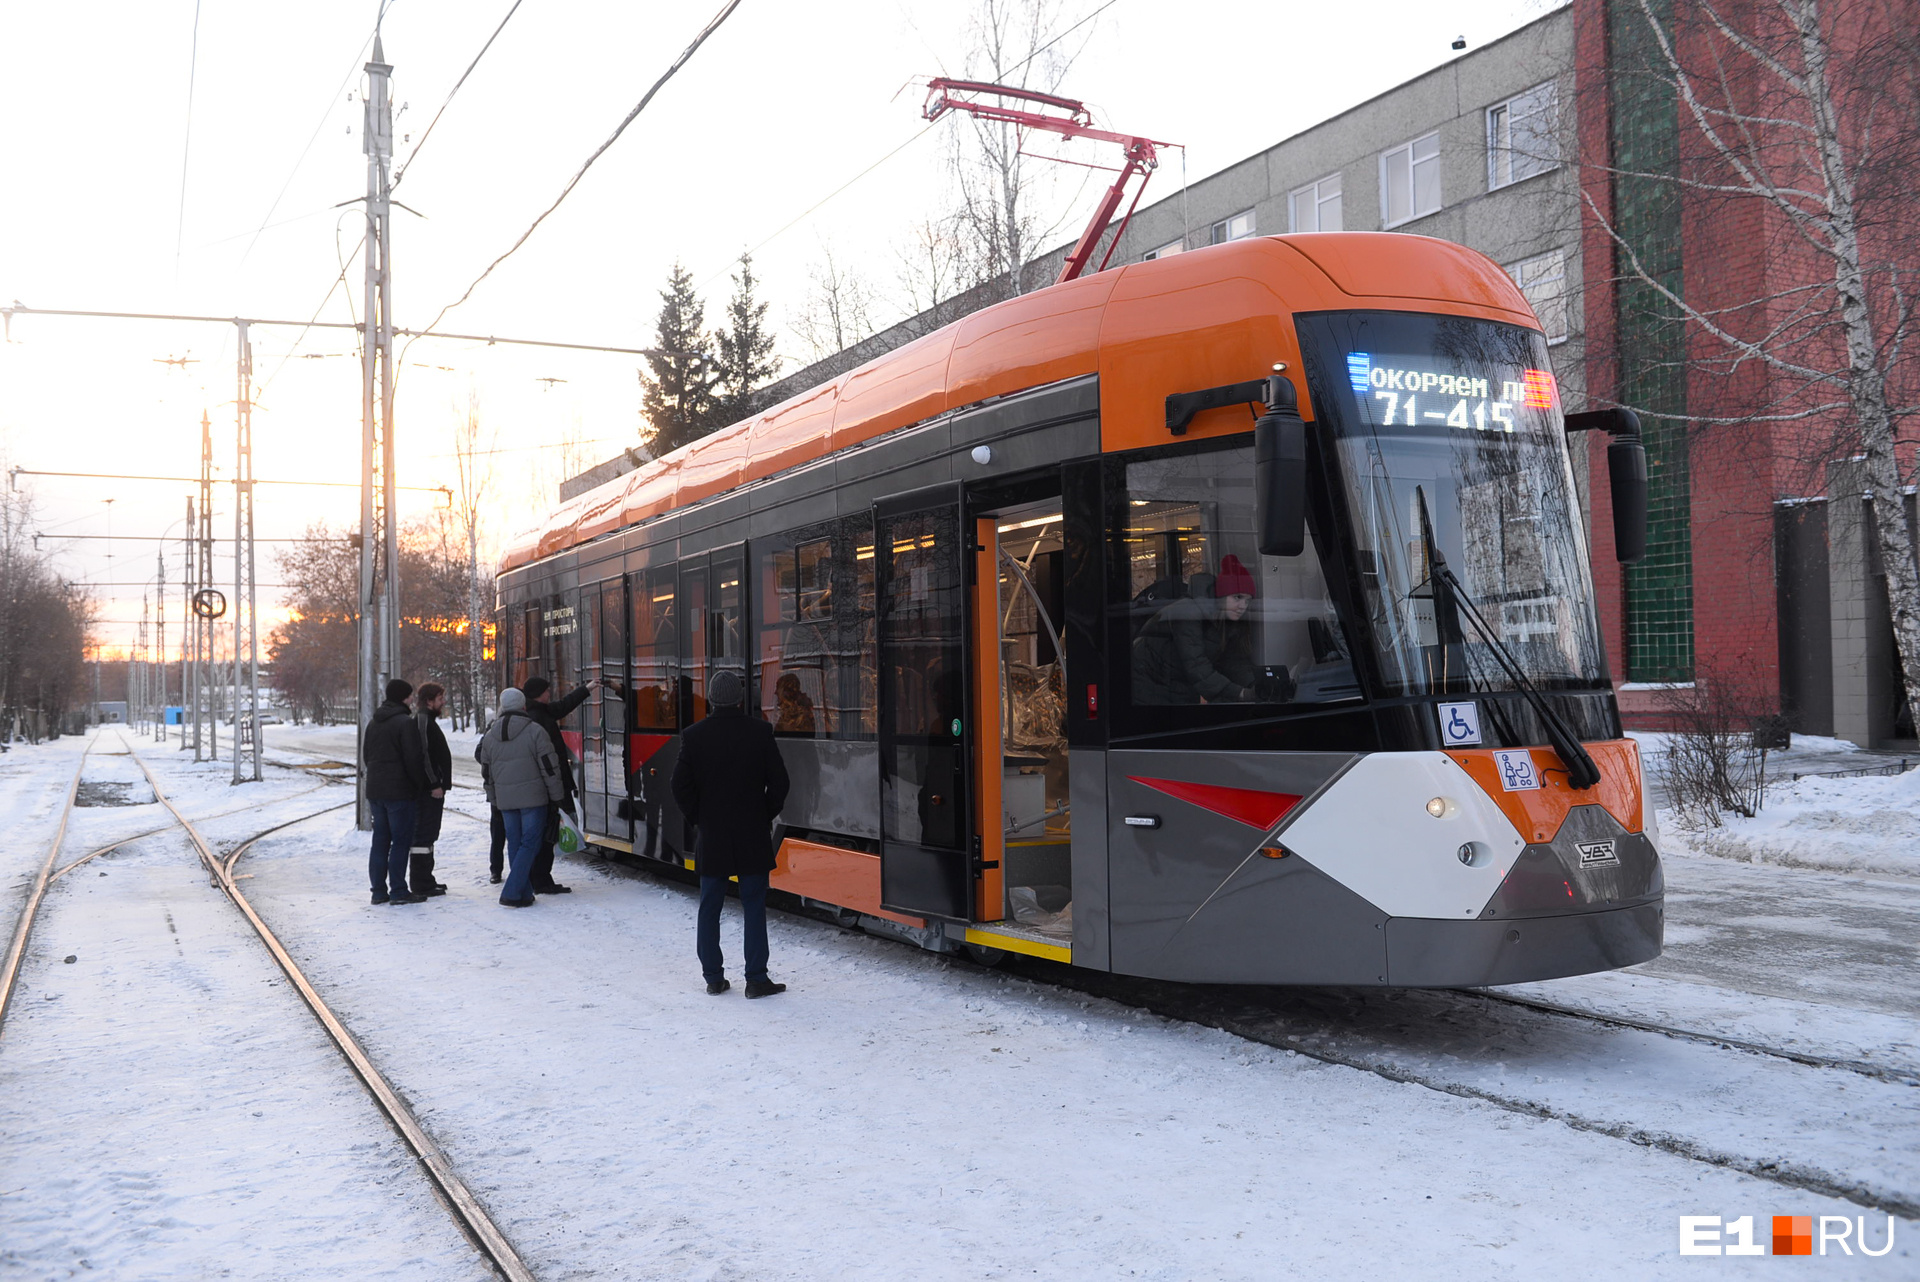 Полностью низкопольный вагон 71–415. Именно на него будет сделана ставка в обновлении трамвайного парка Екатеринбурга. Но он дороже, чем частично низкопольные